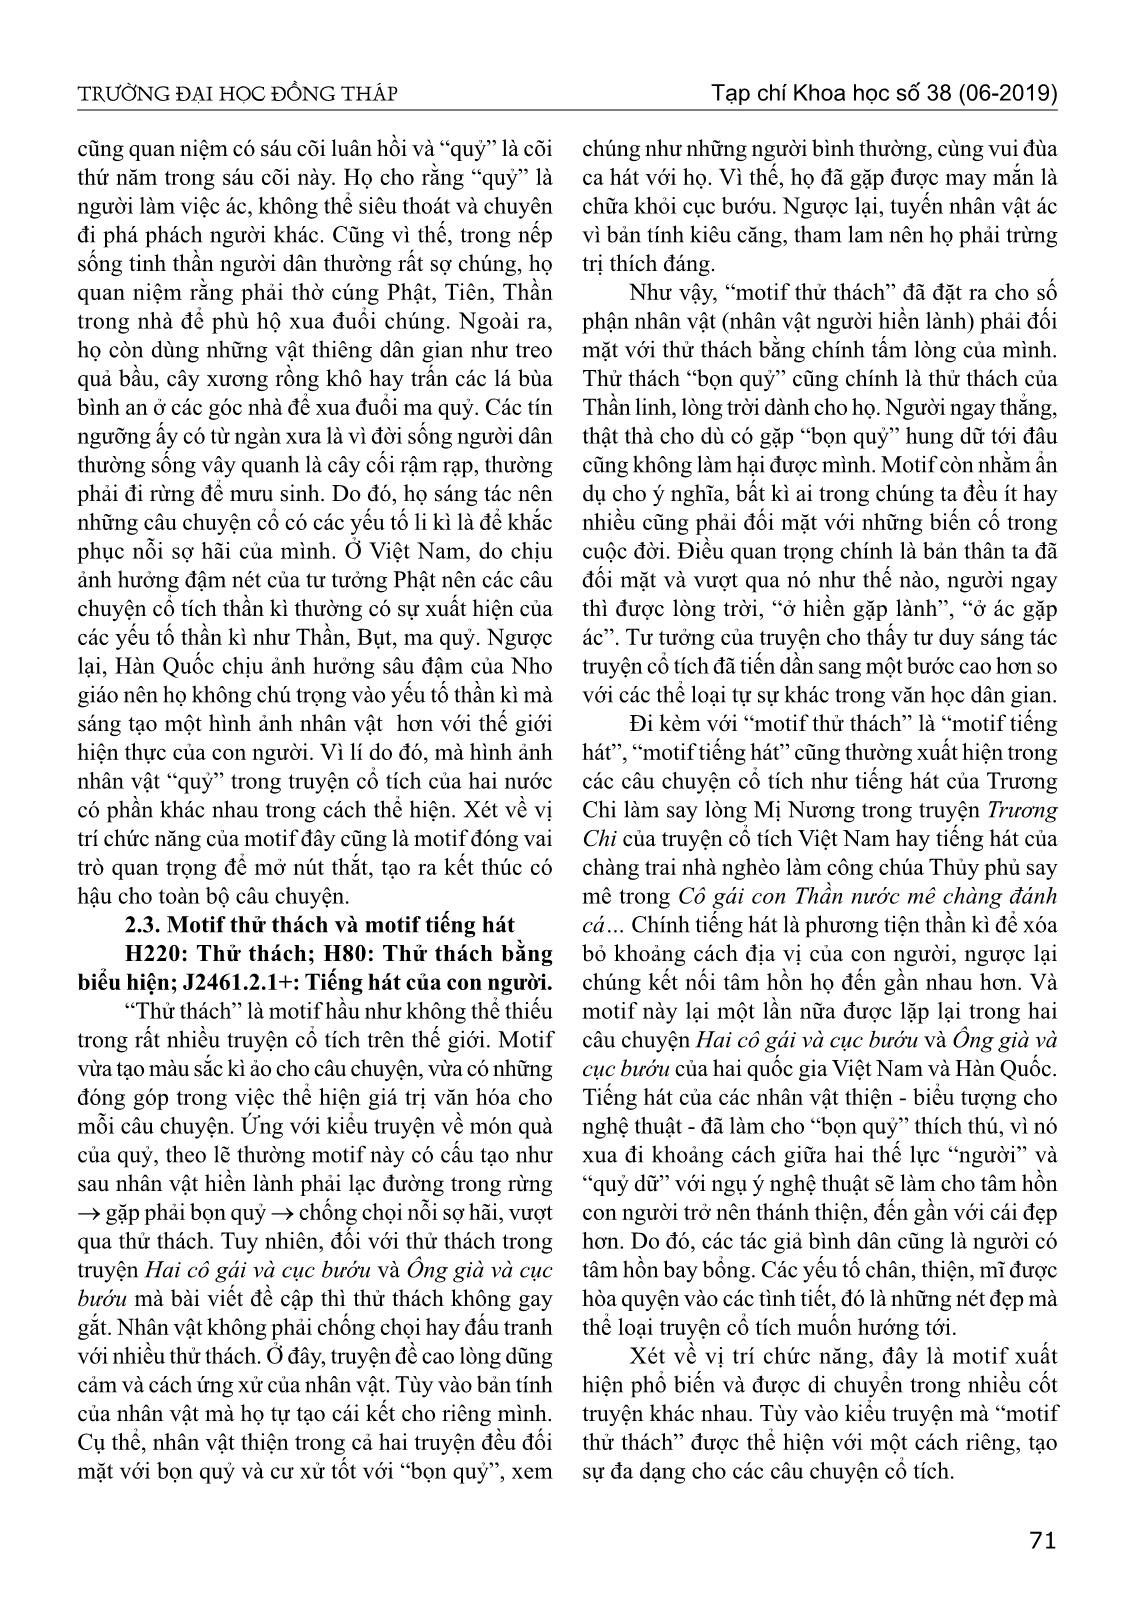 Motif trong truyện cổ tích hai cô gái và cục bướu của Việt Nam và ông già và cục bướu của Hàn Quốc từ góc nhìn so sánh trang 5